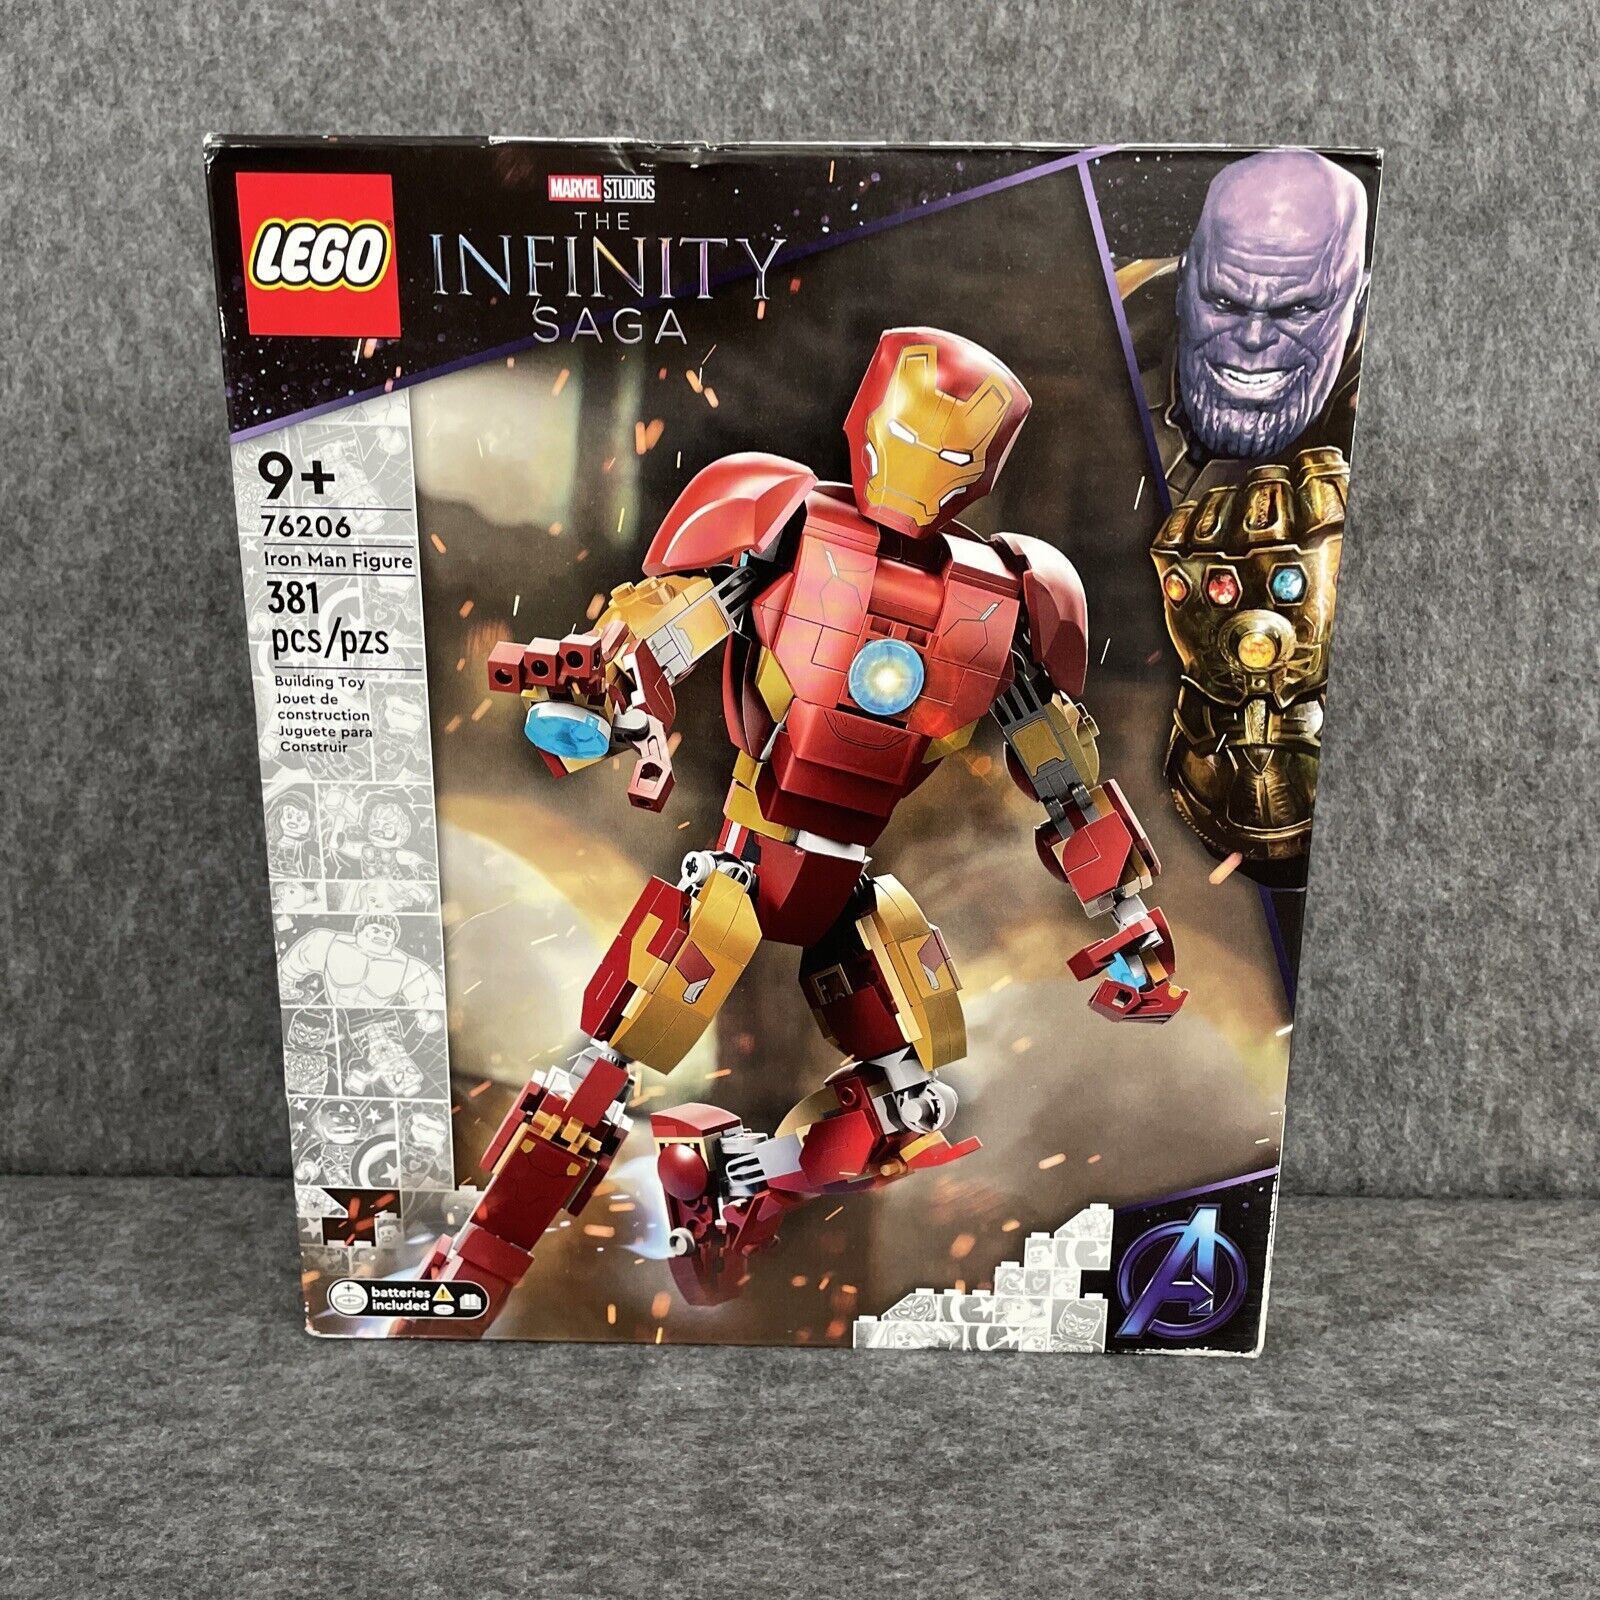 LEGO 76206 Iron Man Figure Infinity Saga Light Up NEW Sealed Retired